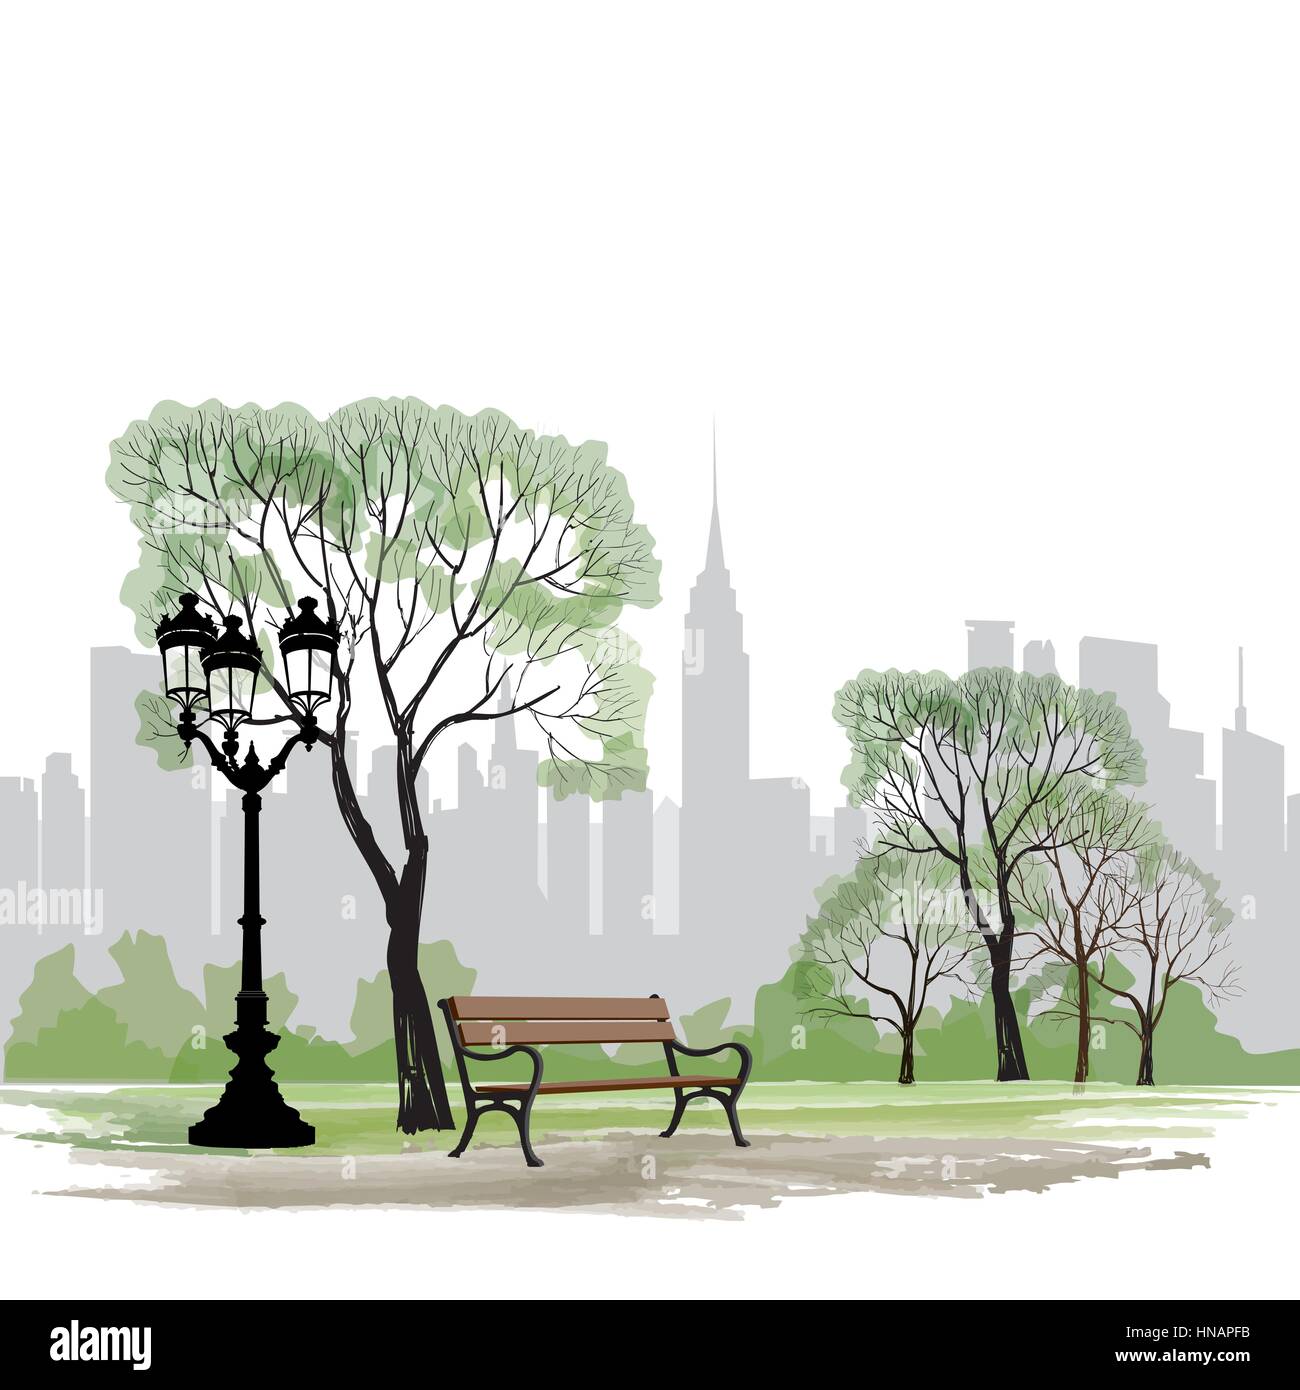 Panca e lampione in parco su sfondo della città. paesaggio di central park a new york. Stati Uniti d'America. Illustrazione Vettoriale